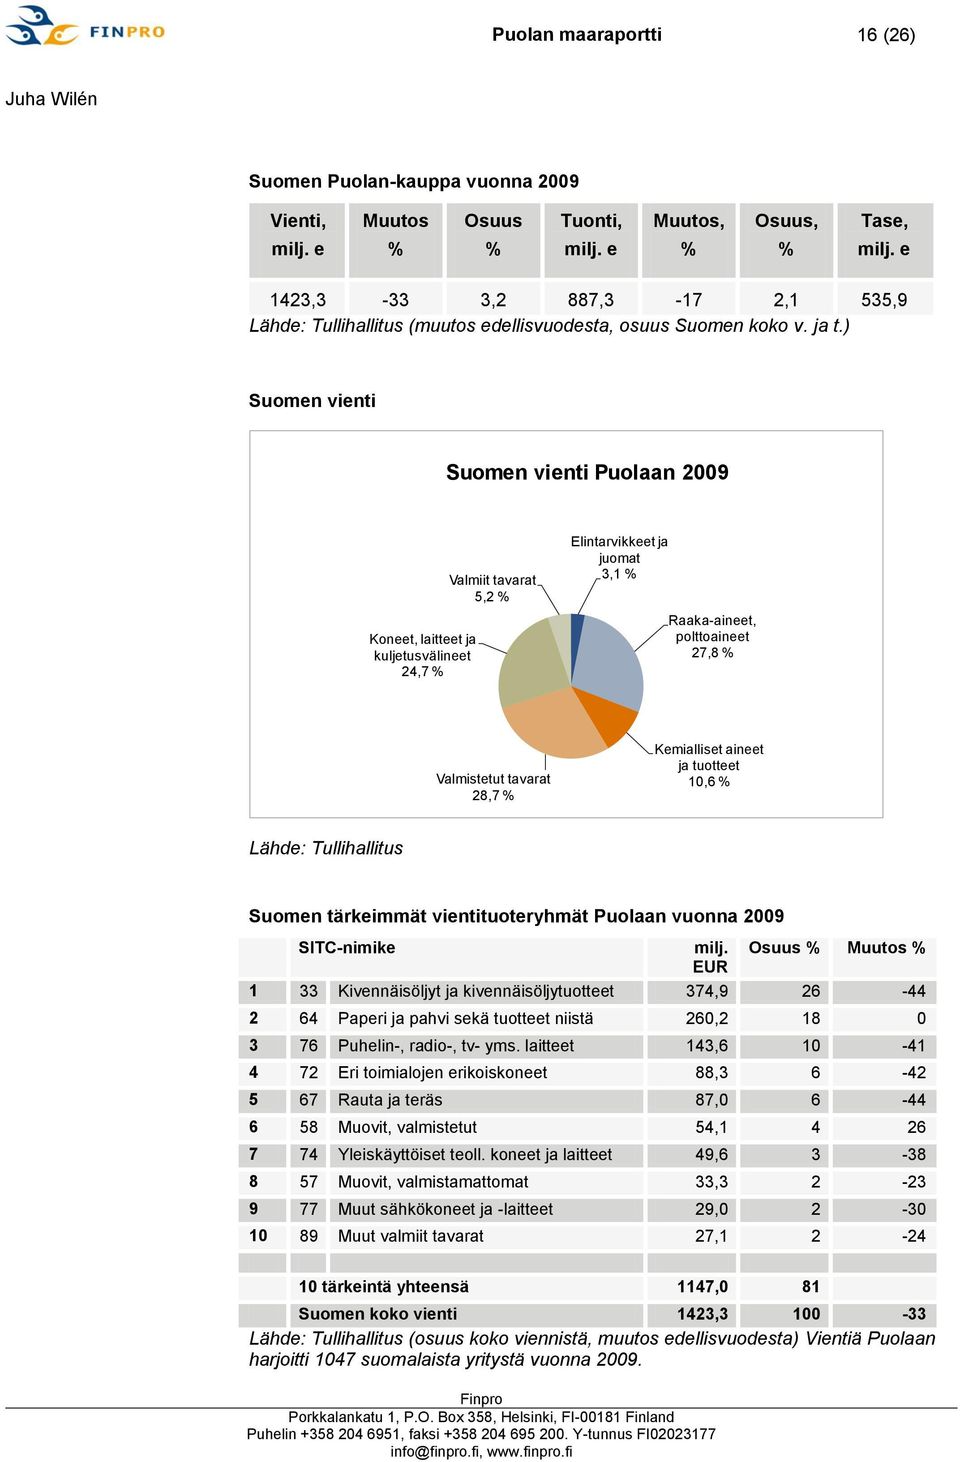 ) Suomen vienti Suomen vienti Puolaan 2009 Koneet, laitteet ja kuljetusvälineet 24,7 % Valmiit tavarat 5,2 % Elintarvikkeet ja juomat 3,1 % Raaka-aineet, polttoaineet 27,8 % Valmistetut tavarat 28,7